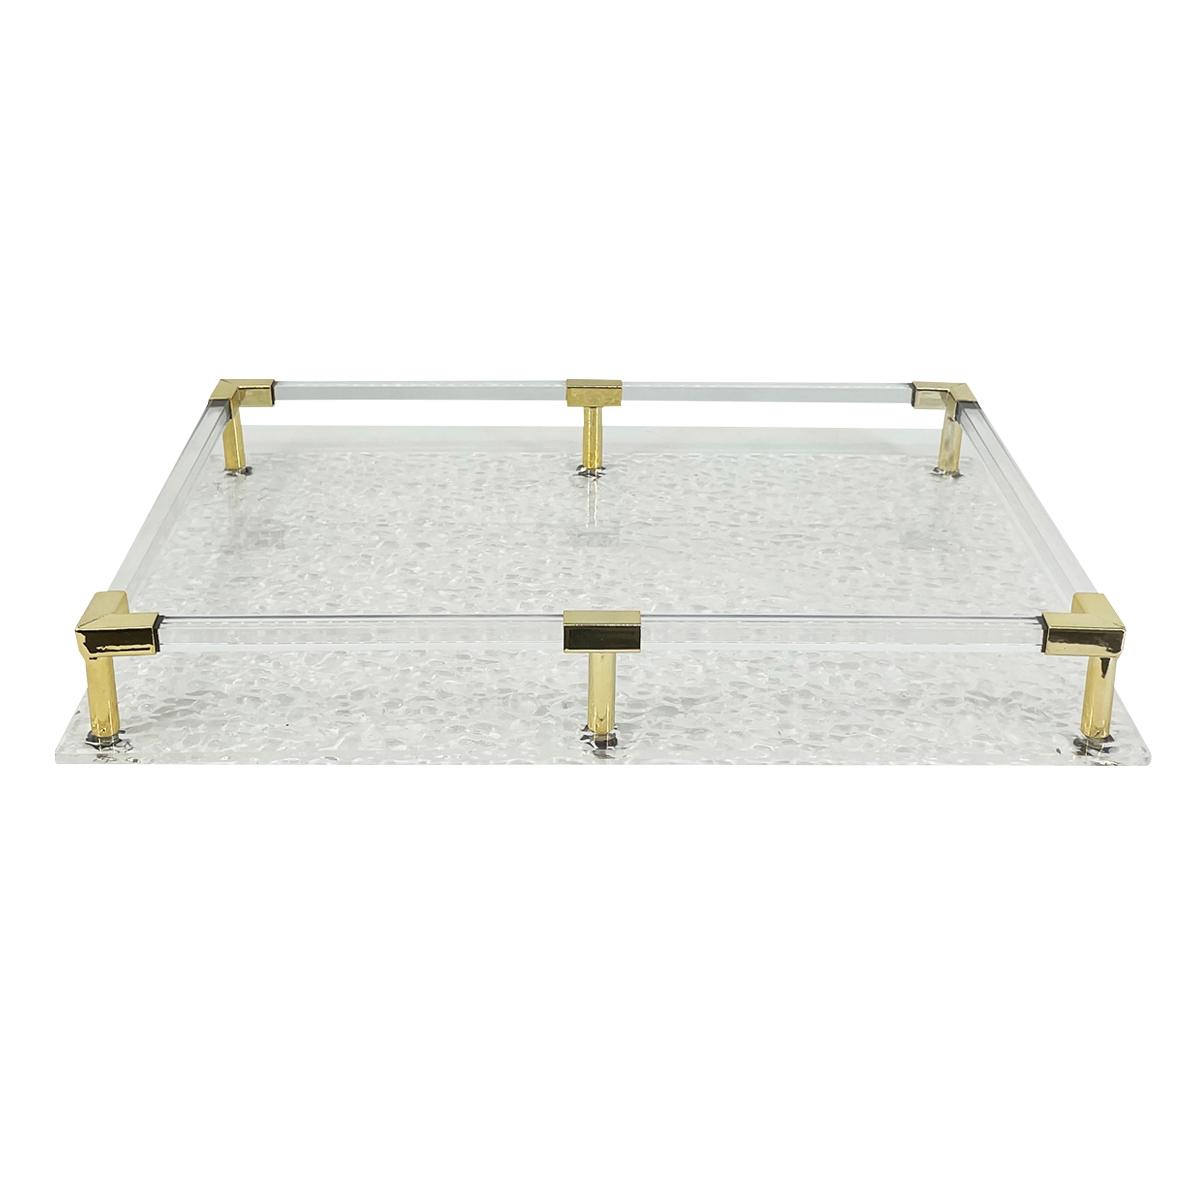 Buy Suli acrylic tray gold 40x25x5. 5 cm in Kuwait